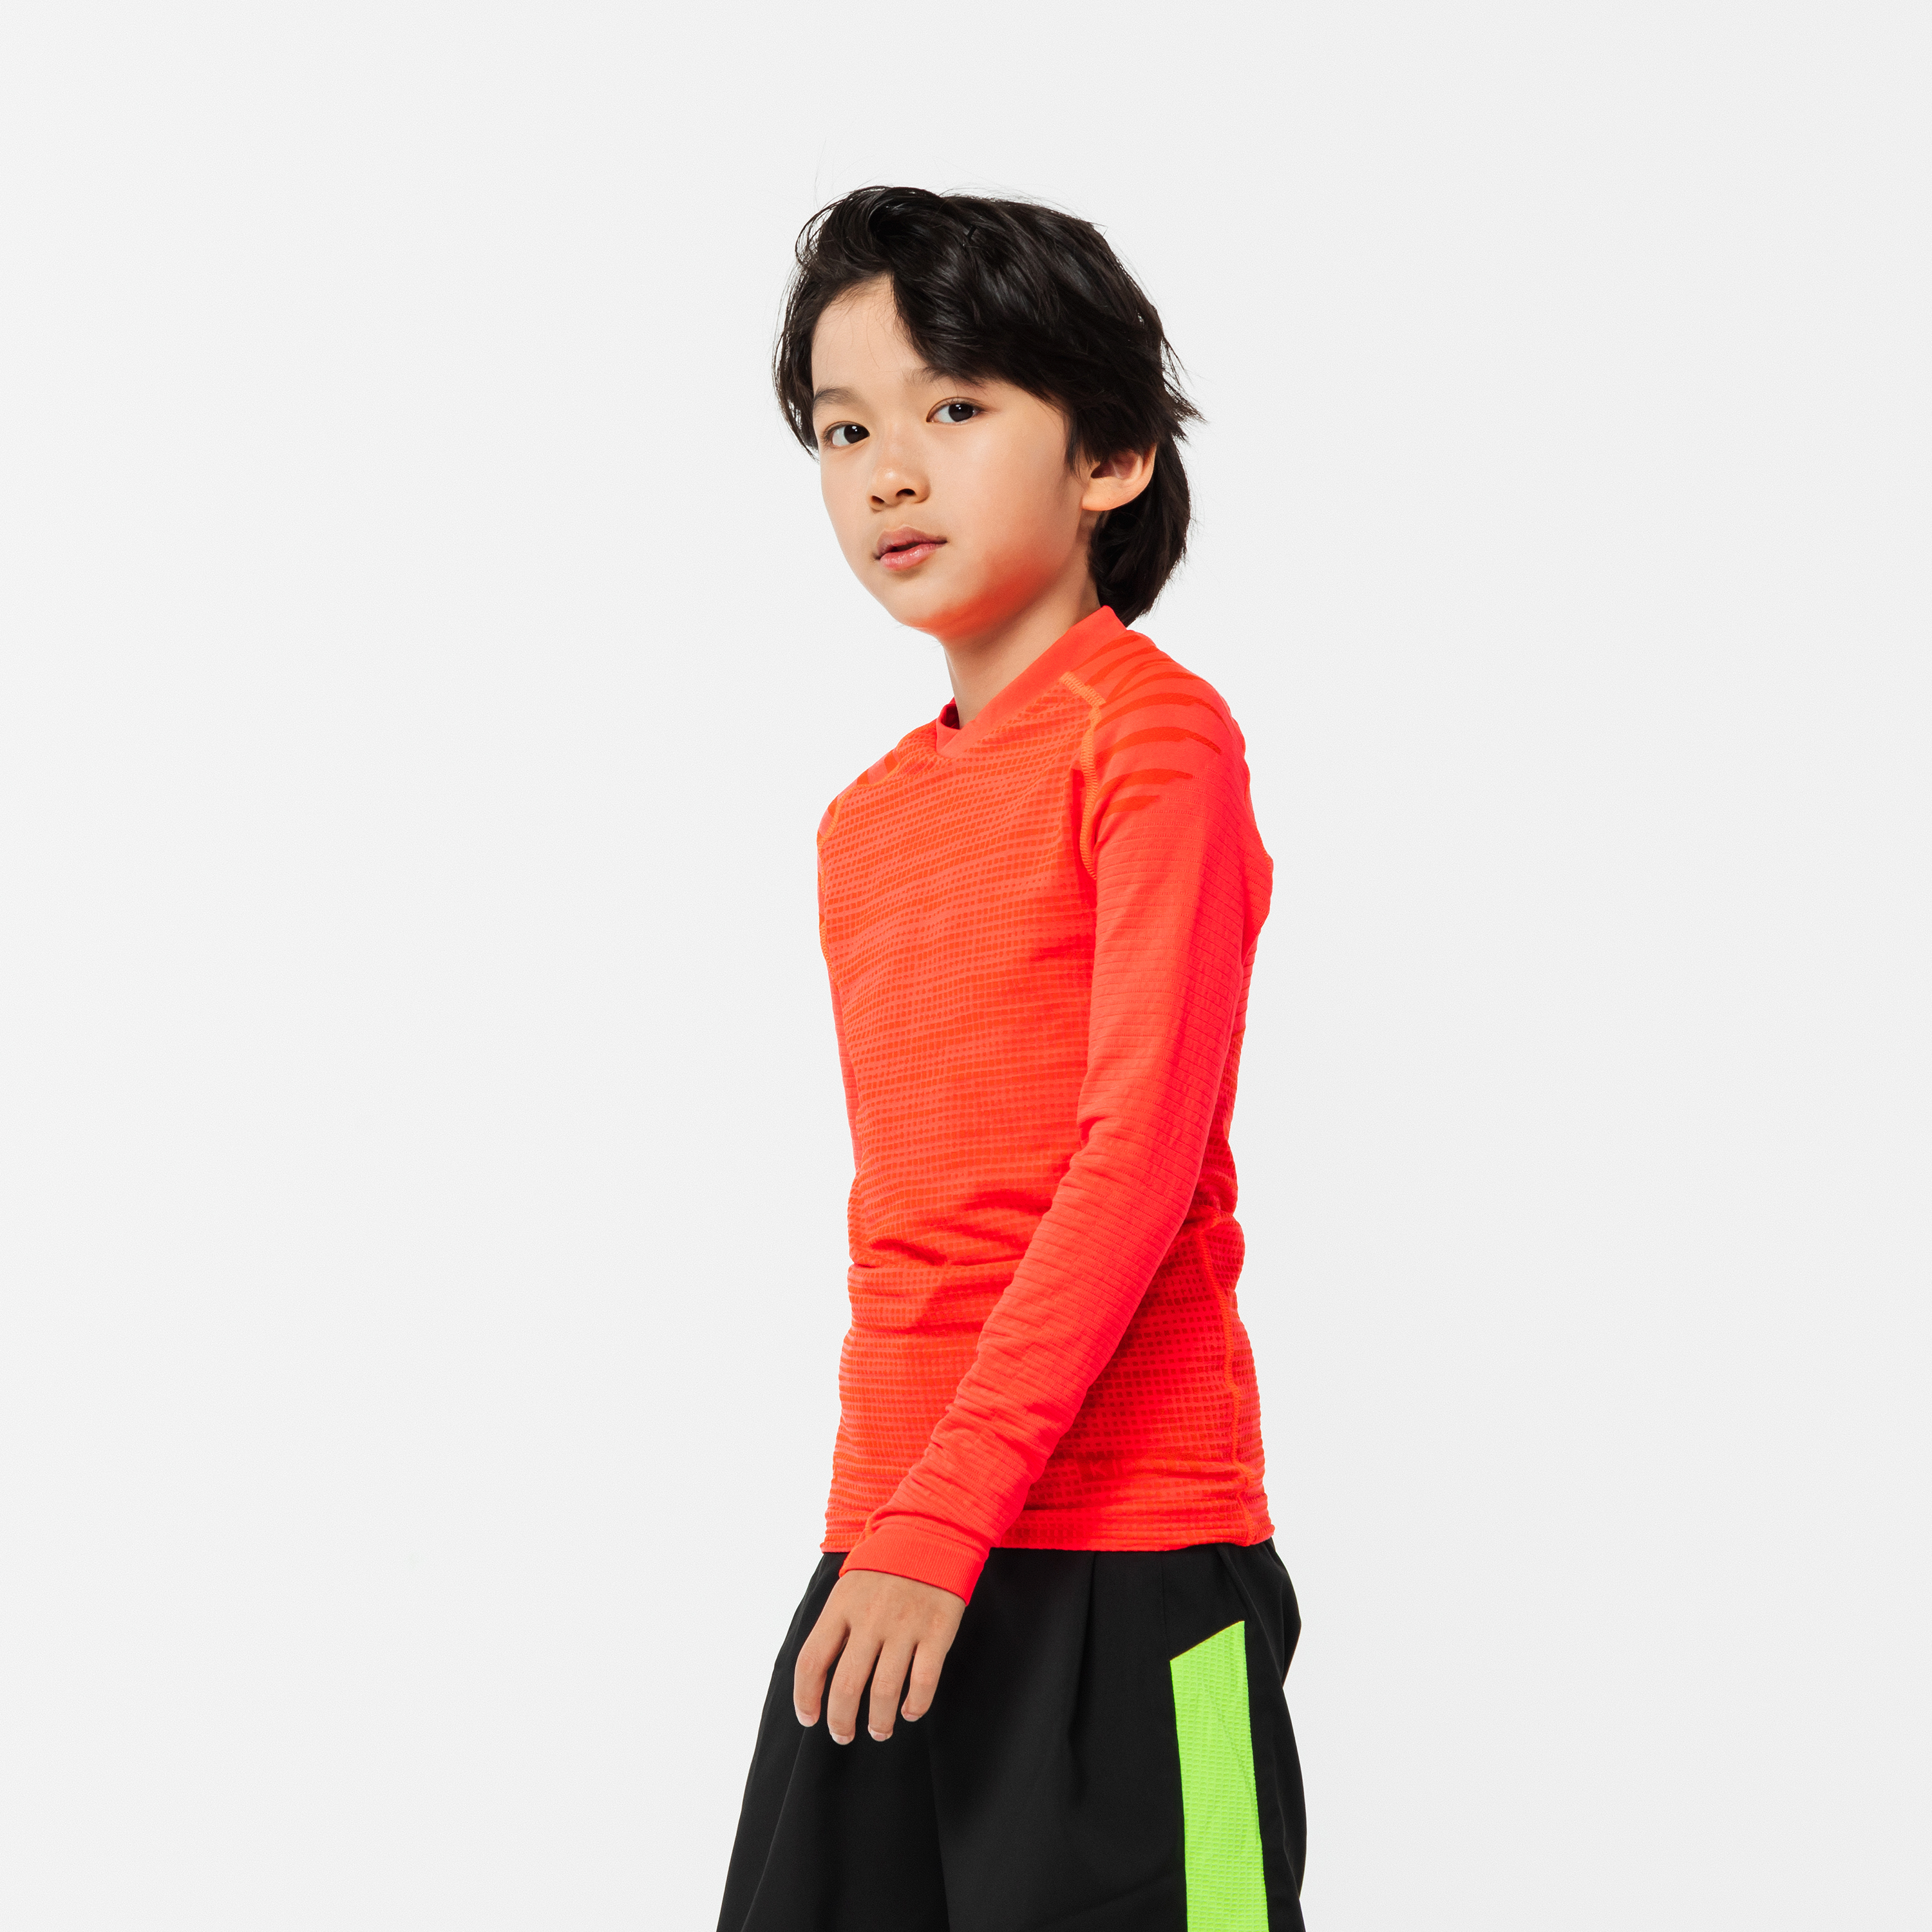 T-shirt de compression thermique pour enfant, vêtement de sport, fitness,  basket-ball, football, gym, course à pied, long, pour garçon et fille